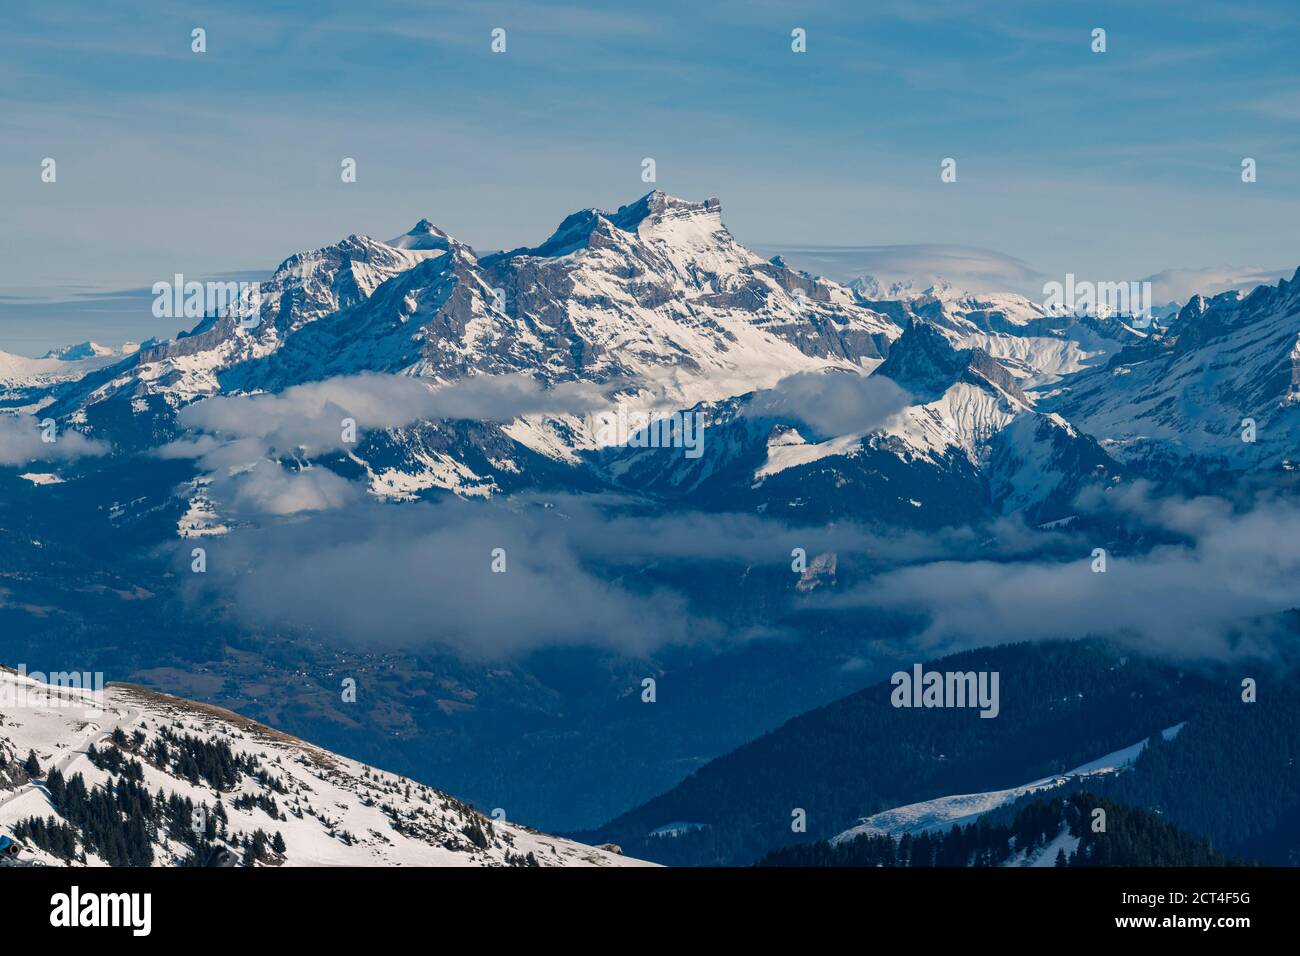 Belles montagnes enneigées avec ciel bleu à la station de ski de Morzine dans la chaîne de montagnes des Alpes de France, Europe Banque D'Images